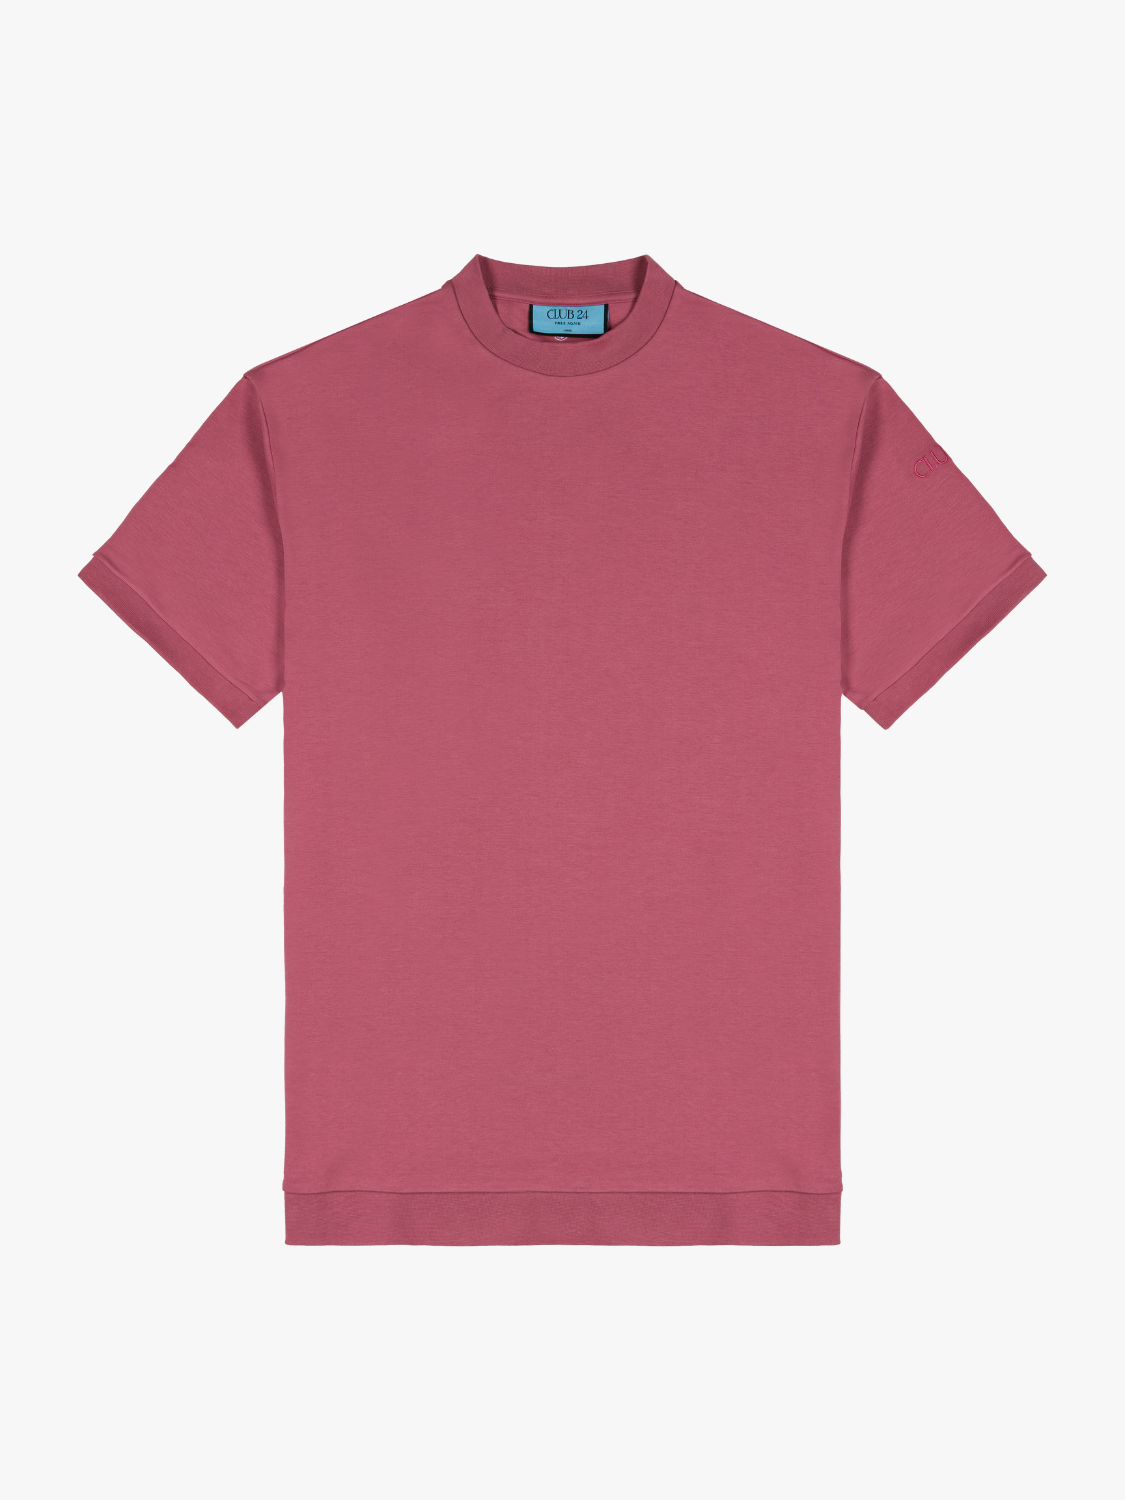 Freedom Fit T-Shirt - Jasper [NEW]